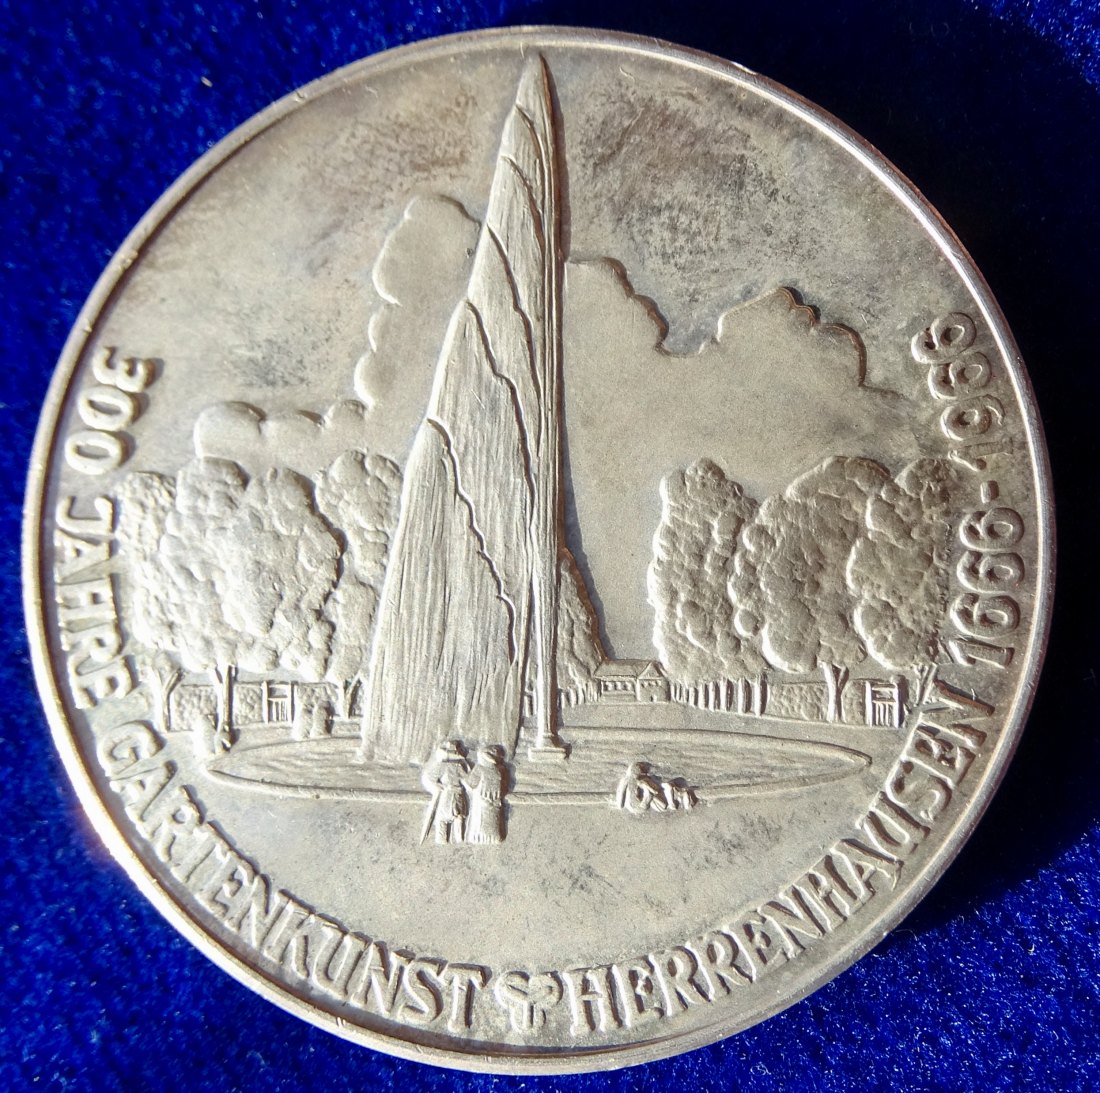  Hannover- Herrenhausen, Niedersachsen Silber- Medaille 1966 von Josef Kapitz   